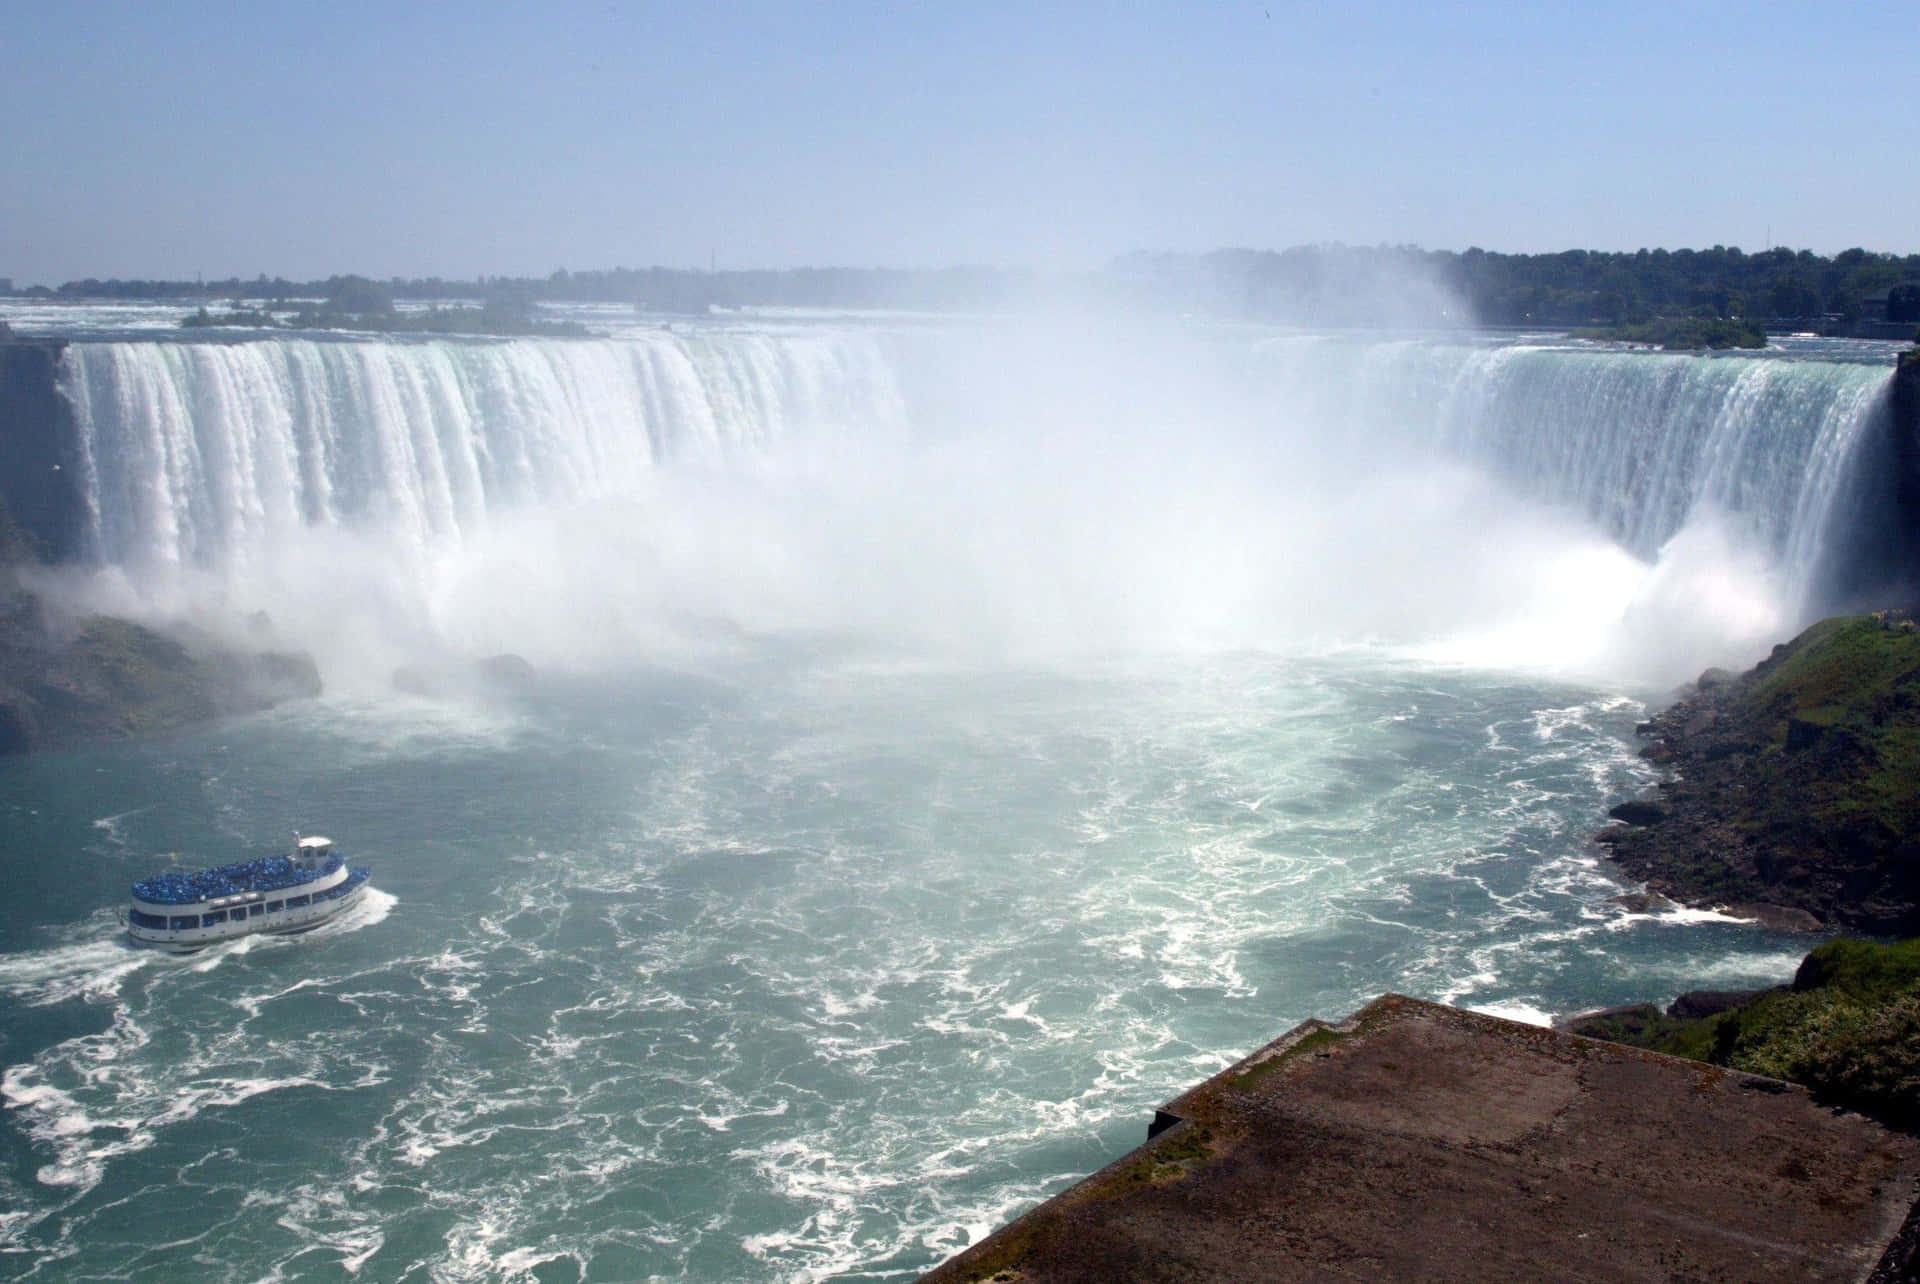 Niagara Falls, the majestic Canadian waterfall